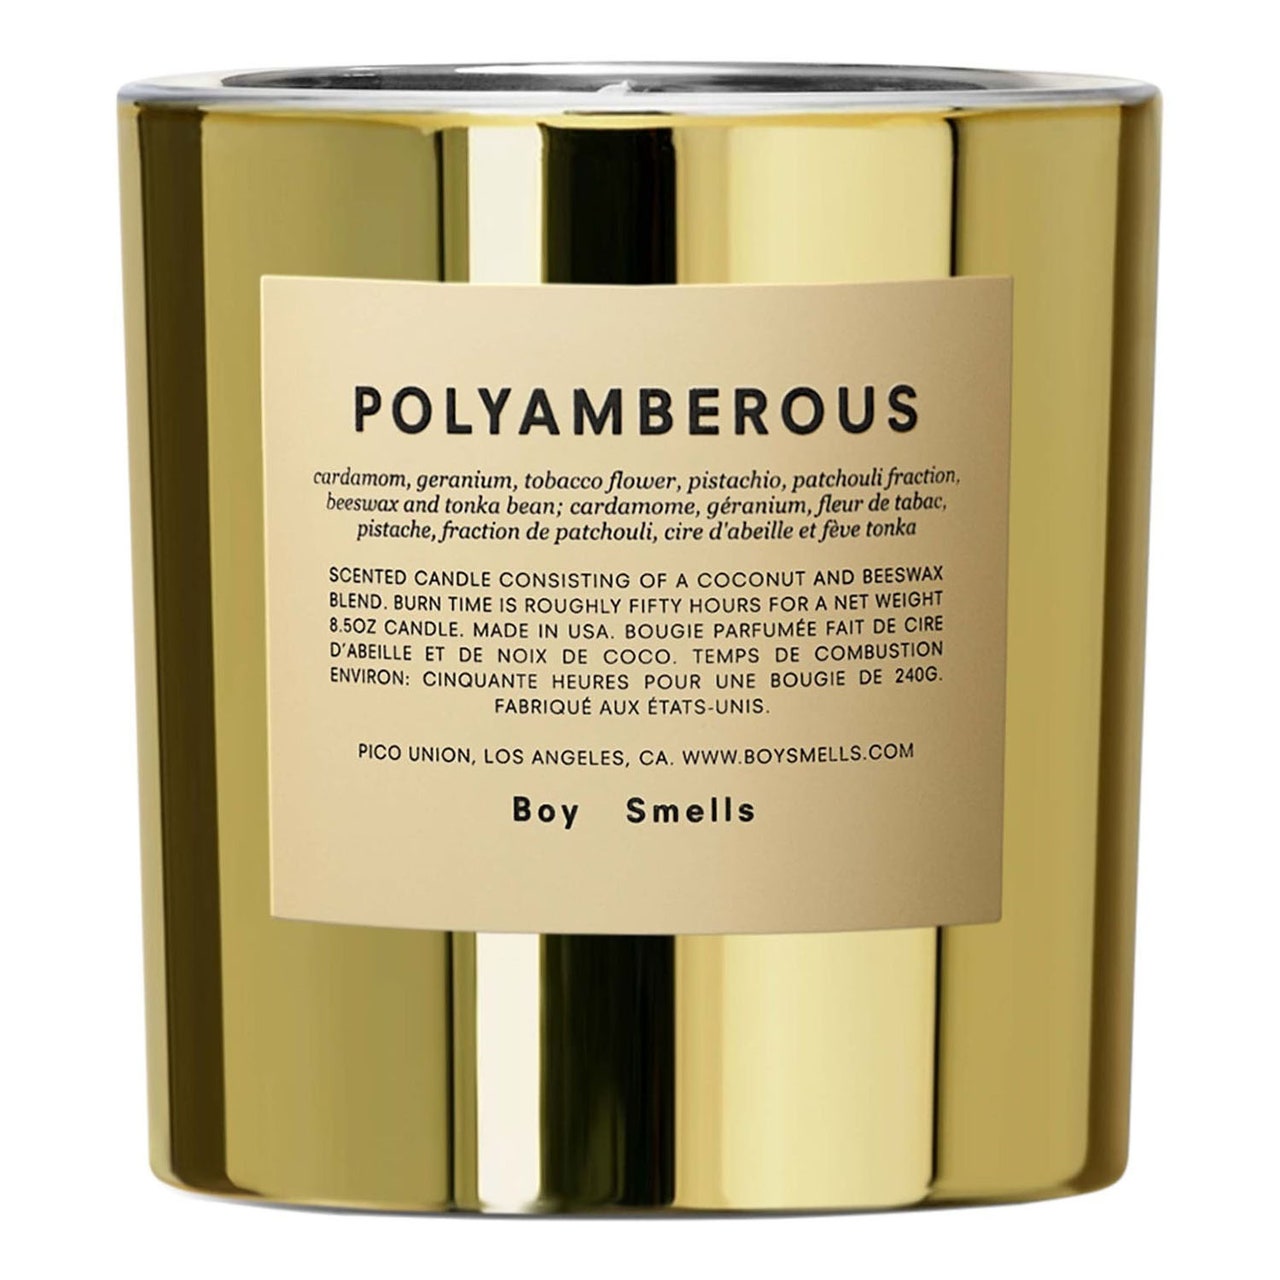 Boy Smells Polyamberous Kerze in Gold auf weißem Hintergrund